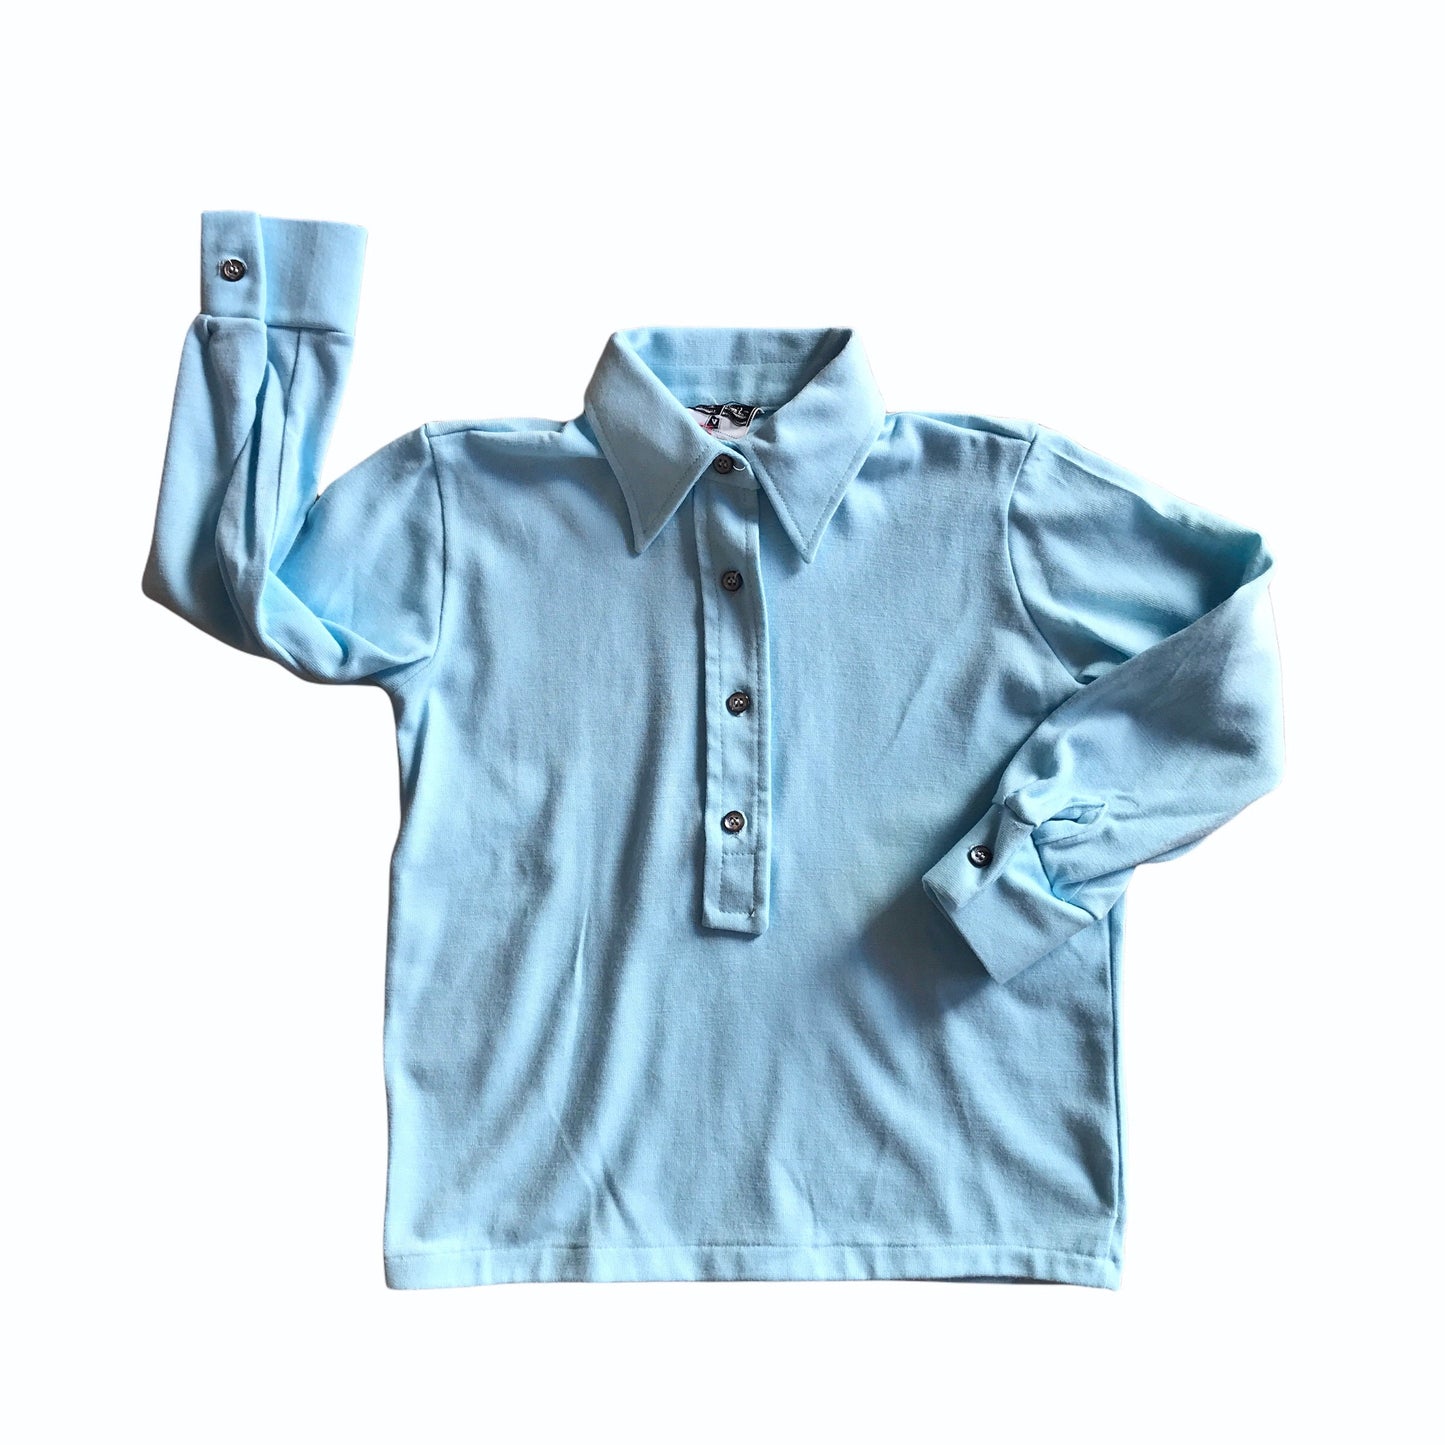 Vintage 1970's Children Blue Shirt British Made 4-5 Years